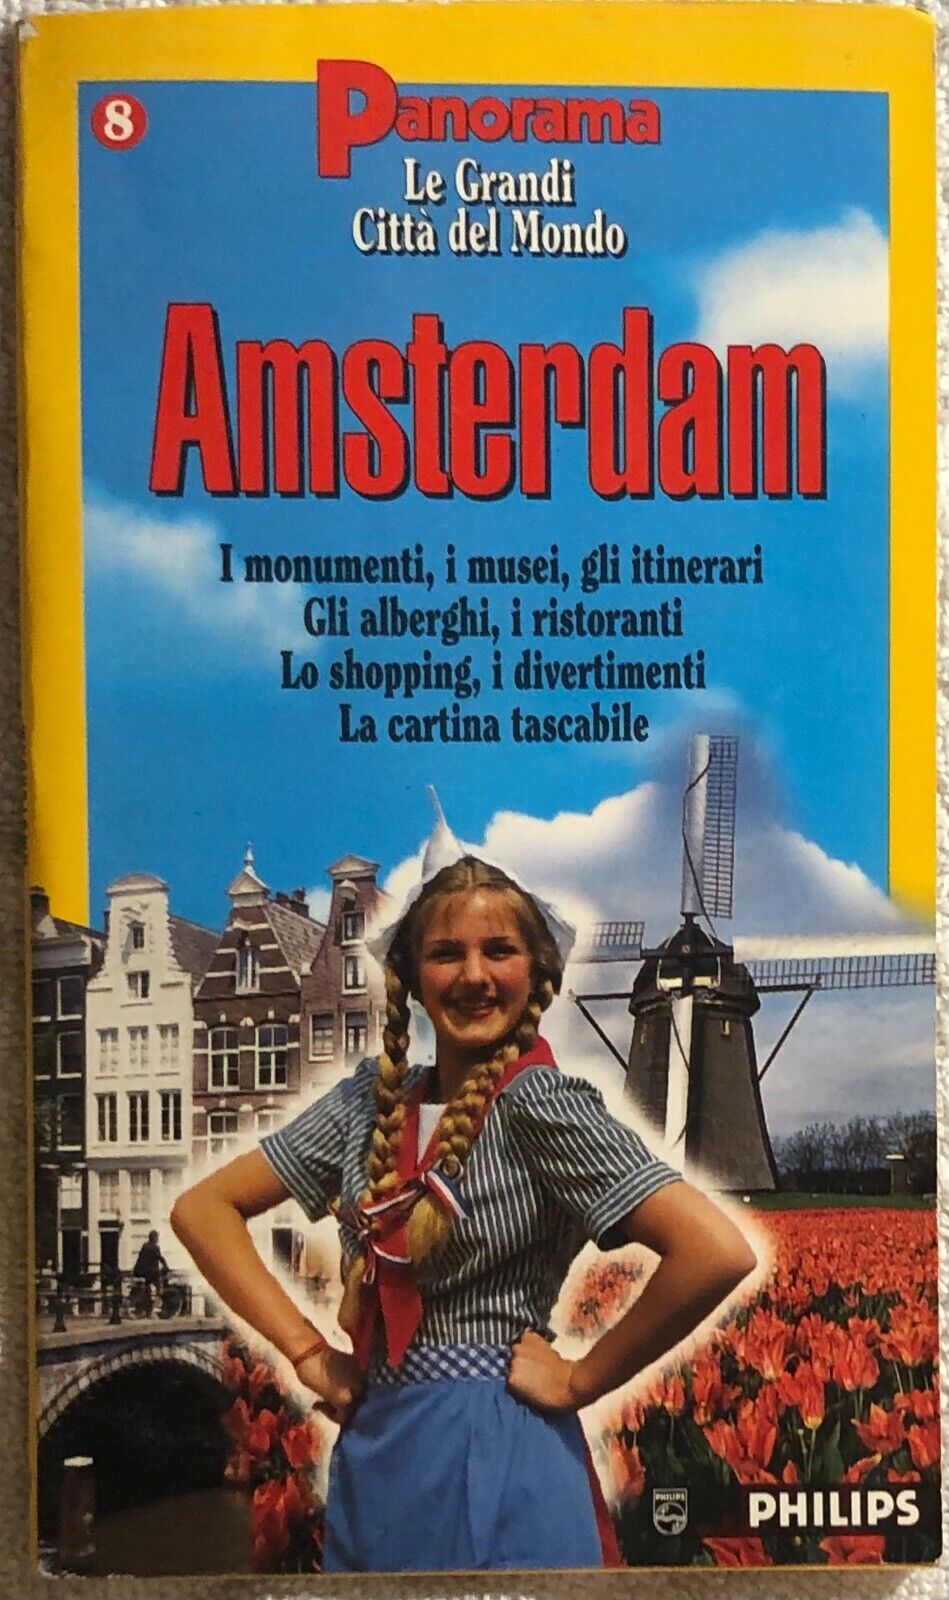 Le grandi citt? del mondo - Amsterdam di Aa.vv.,  1995,  Panorama